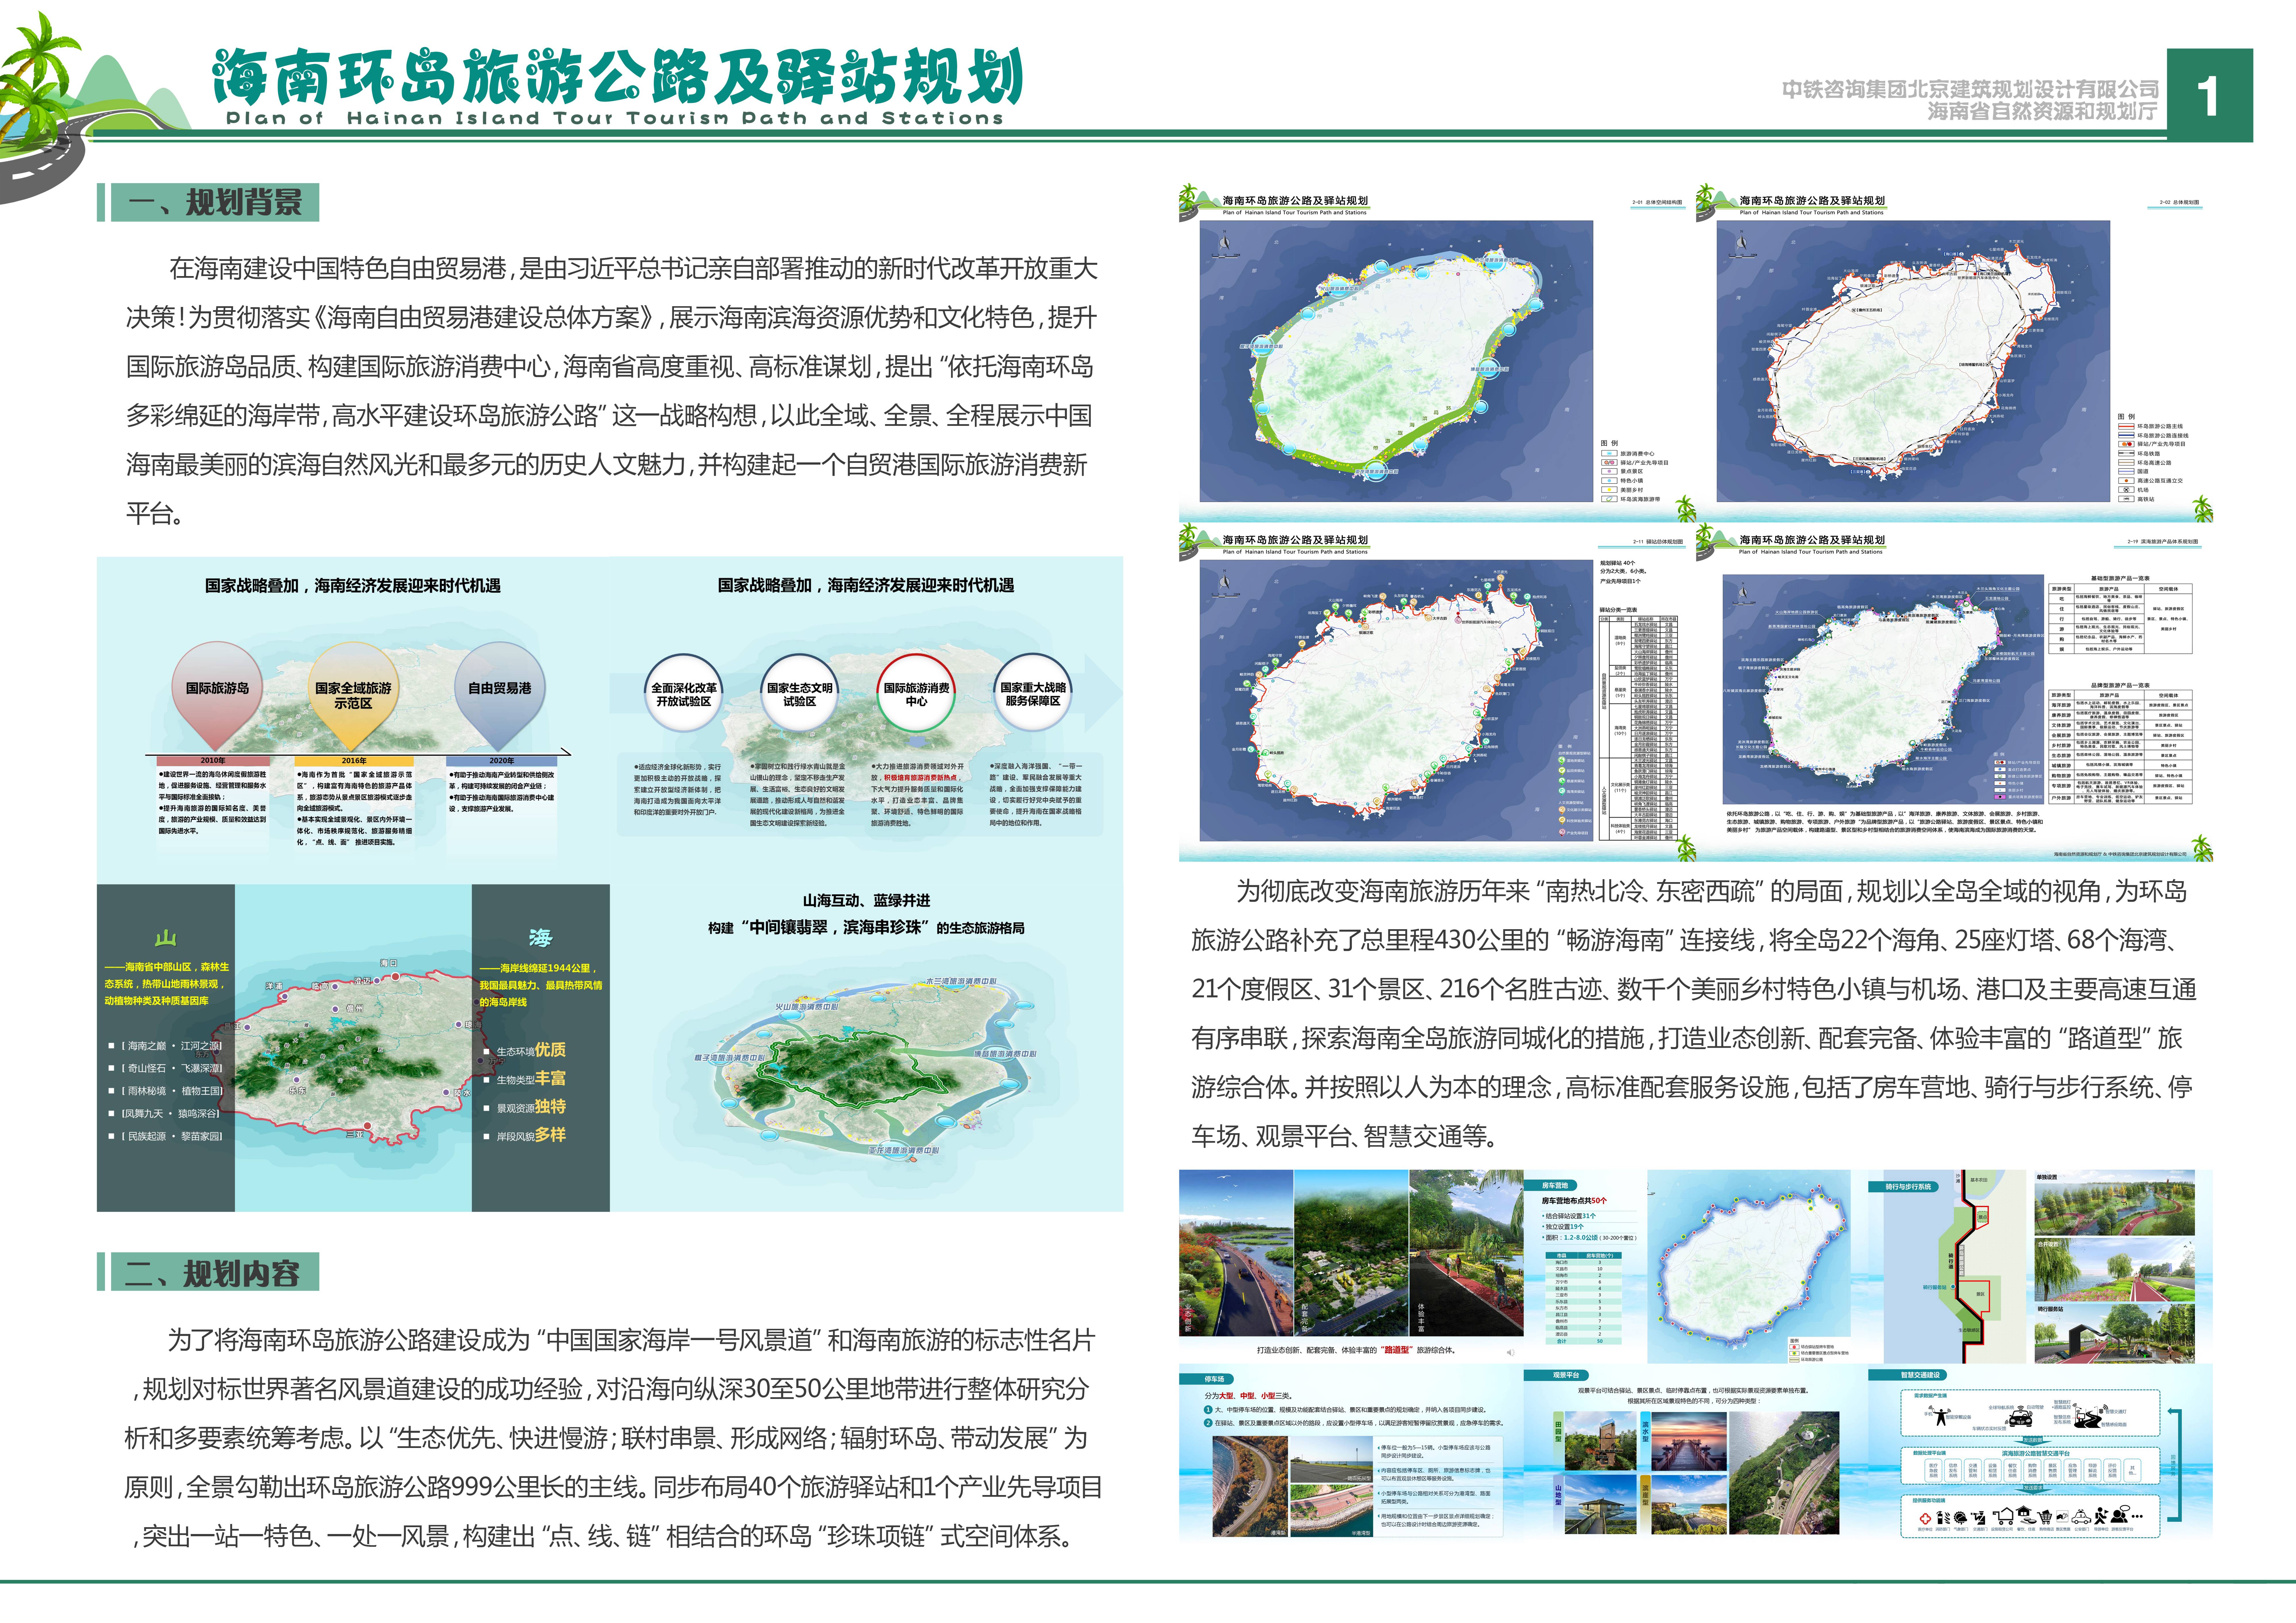 本次展示项目《海南环岛旅游公路及驿站规划》由中铁咨询集团北京建筑